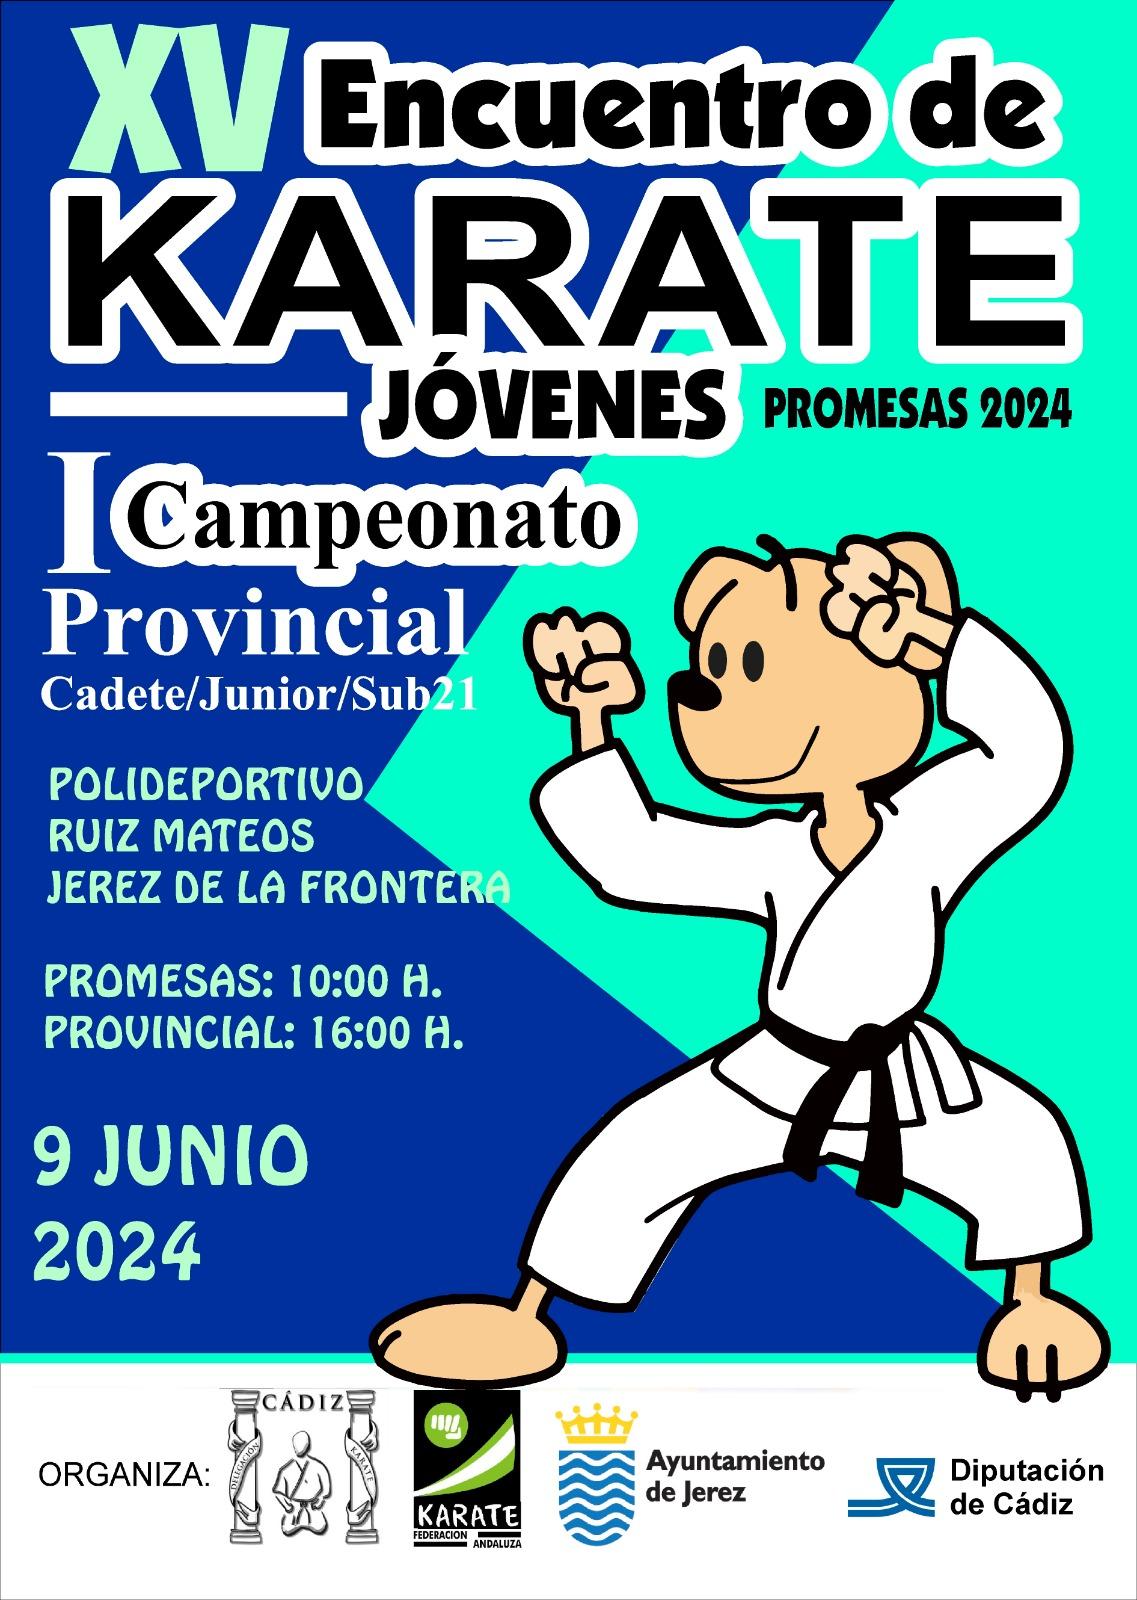 Más de 400 karatekas asisten al XV Encuentro de Jóvenes Promesas y al I Campeonato Provincial en el Pabellón Ruiz Mateos